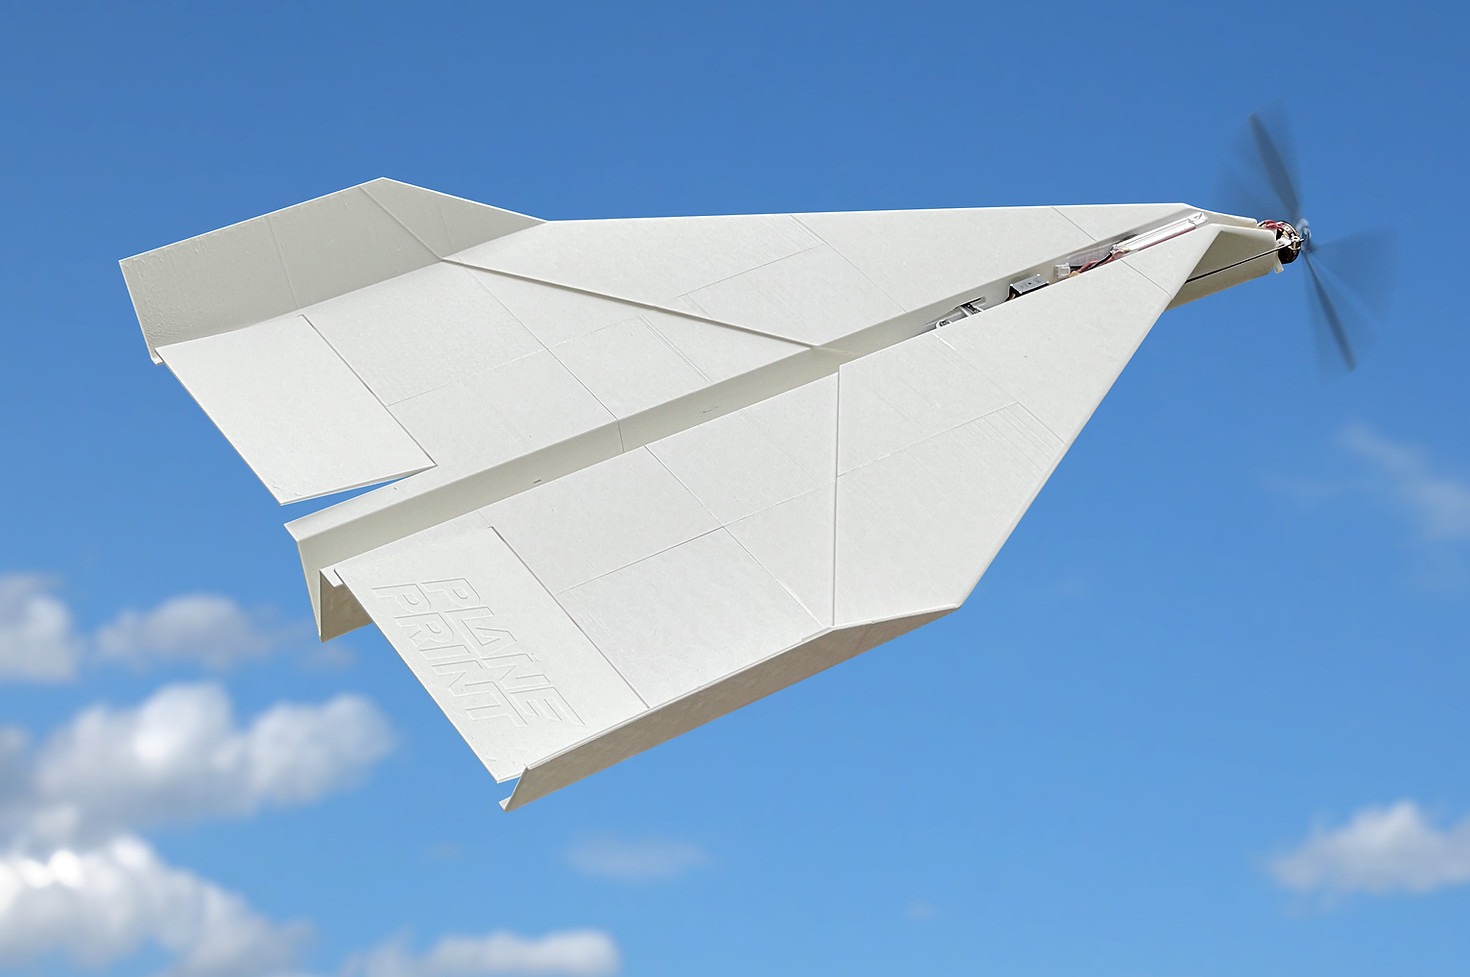 Paper Plane PLANEPRINT